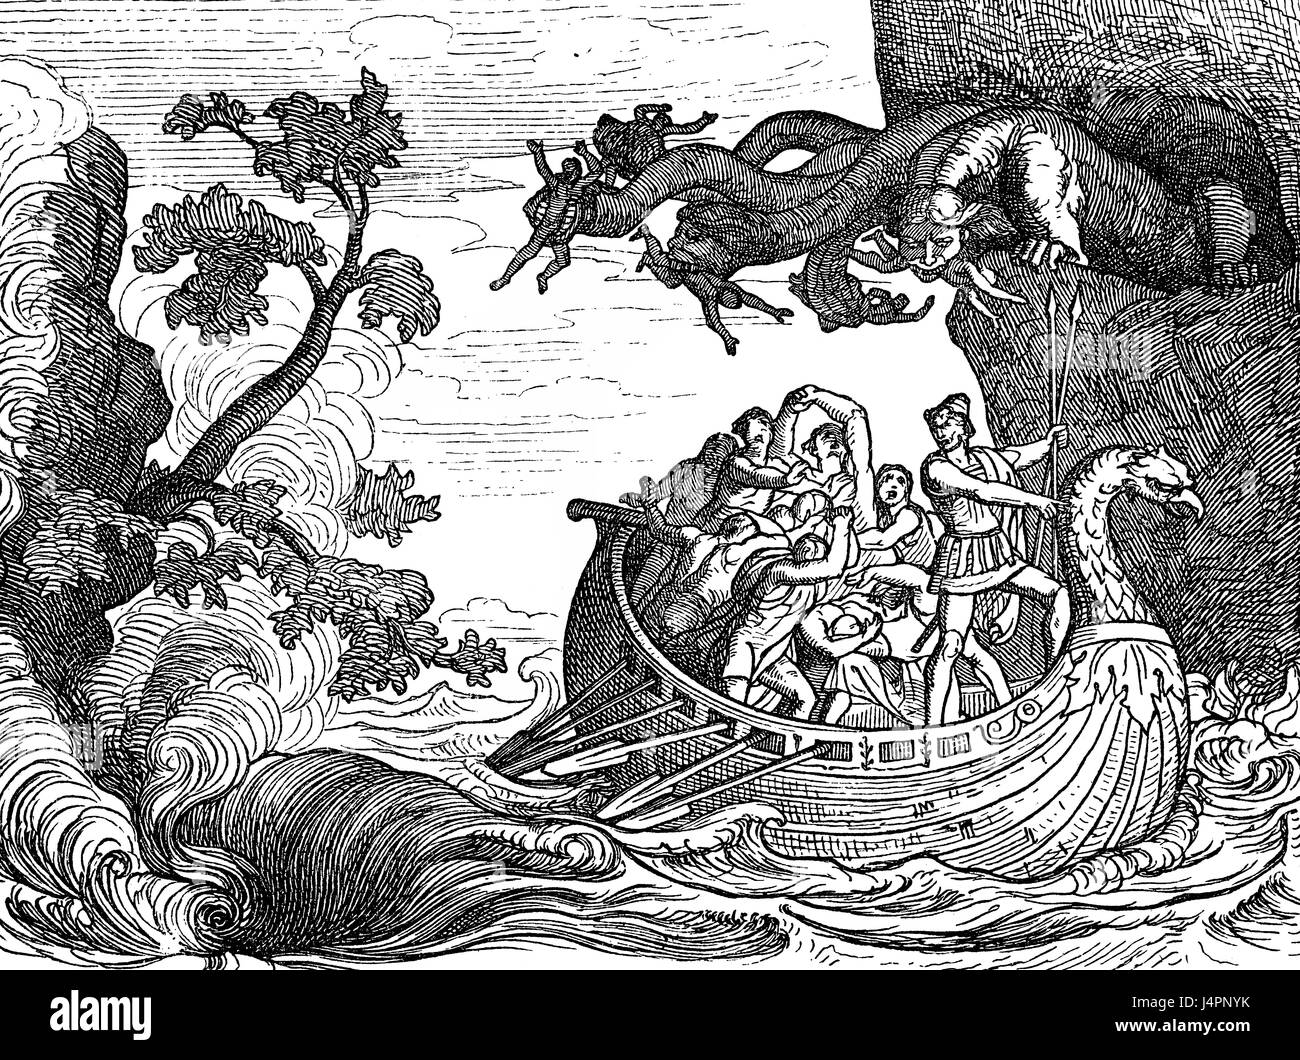 Les six chefs de Monster et le tourbillon Scylla Charybde, l'Odyssée d'Homère Banque D'Images